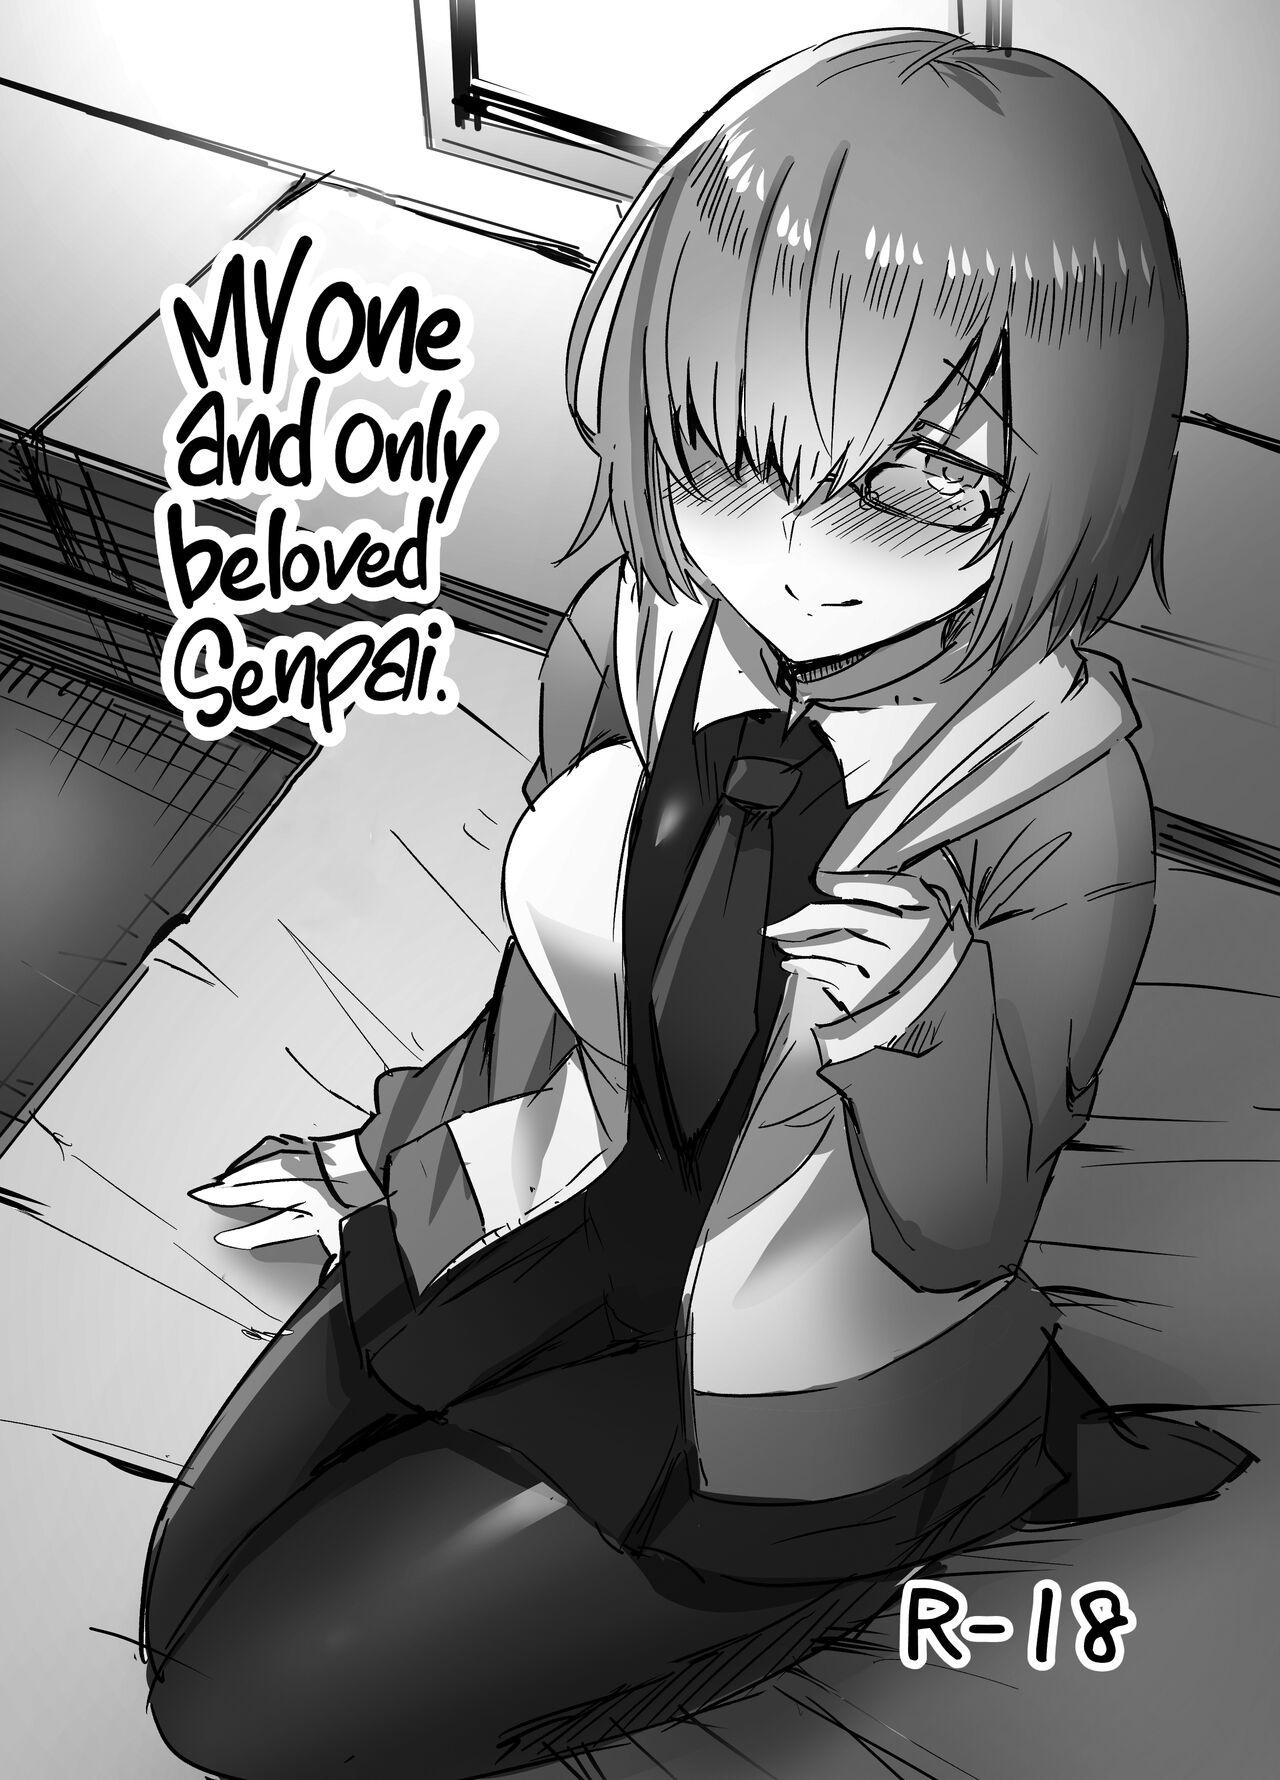 Negao Daisuki na Daisuki na Watashi dake no Senpai. | My One and Only Beloved Senpai. - Fate grand order Porn - Page 1